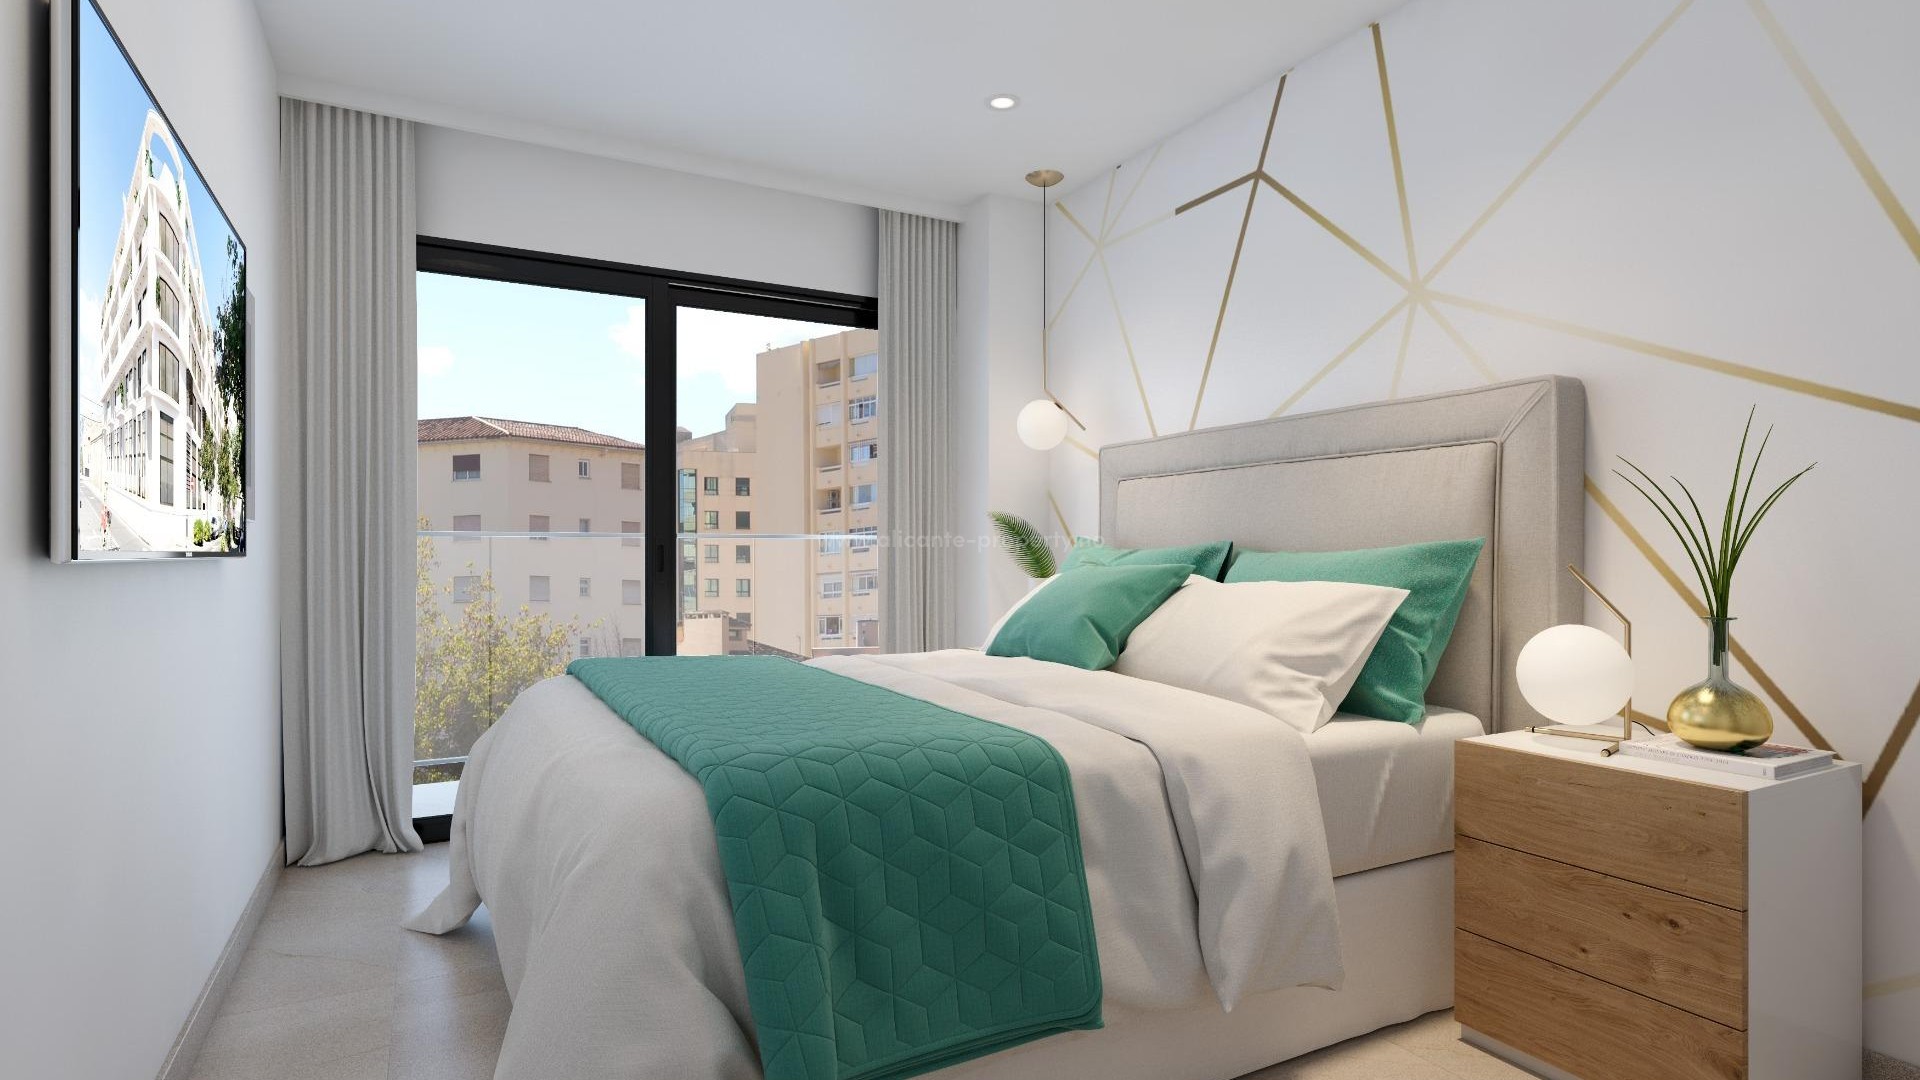 Boliger/leiligheter i Alicante by (La Florida),2,3,4 sov, takterrasse m/ basseng for barn og voksne. Hage, egen parkeringsplass, bod. Tett på infrastruktur